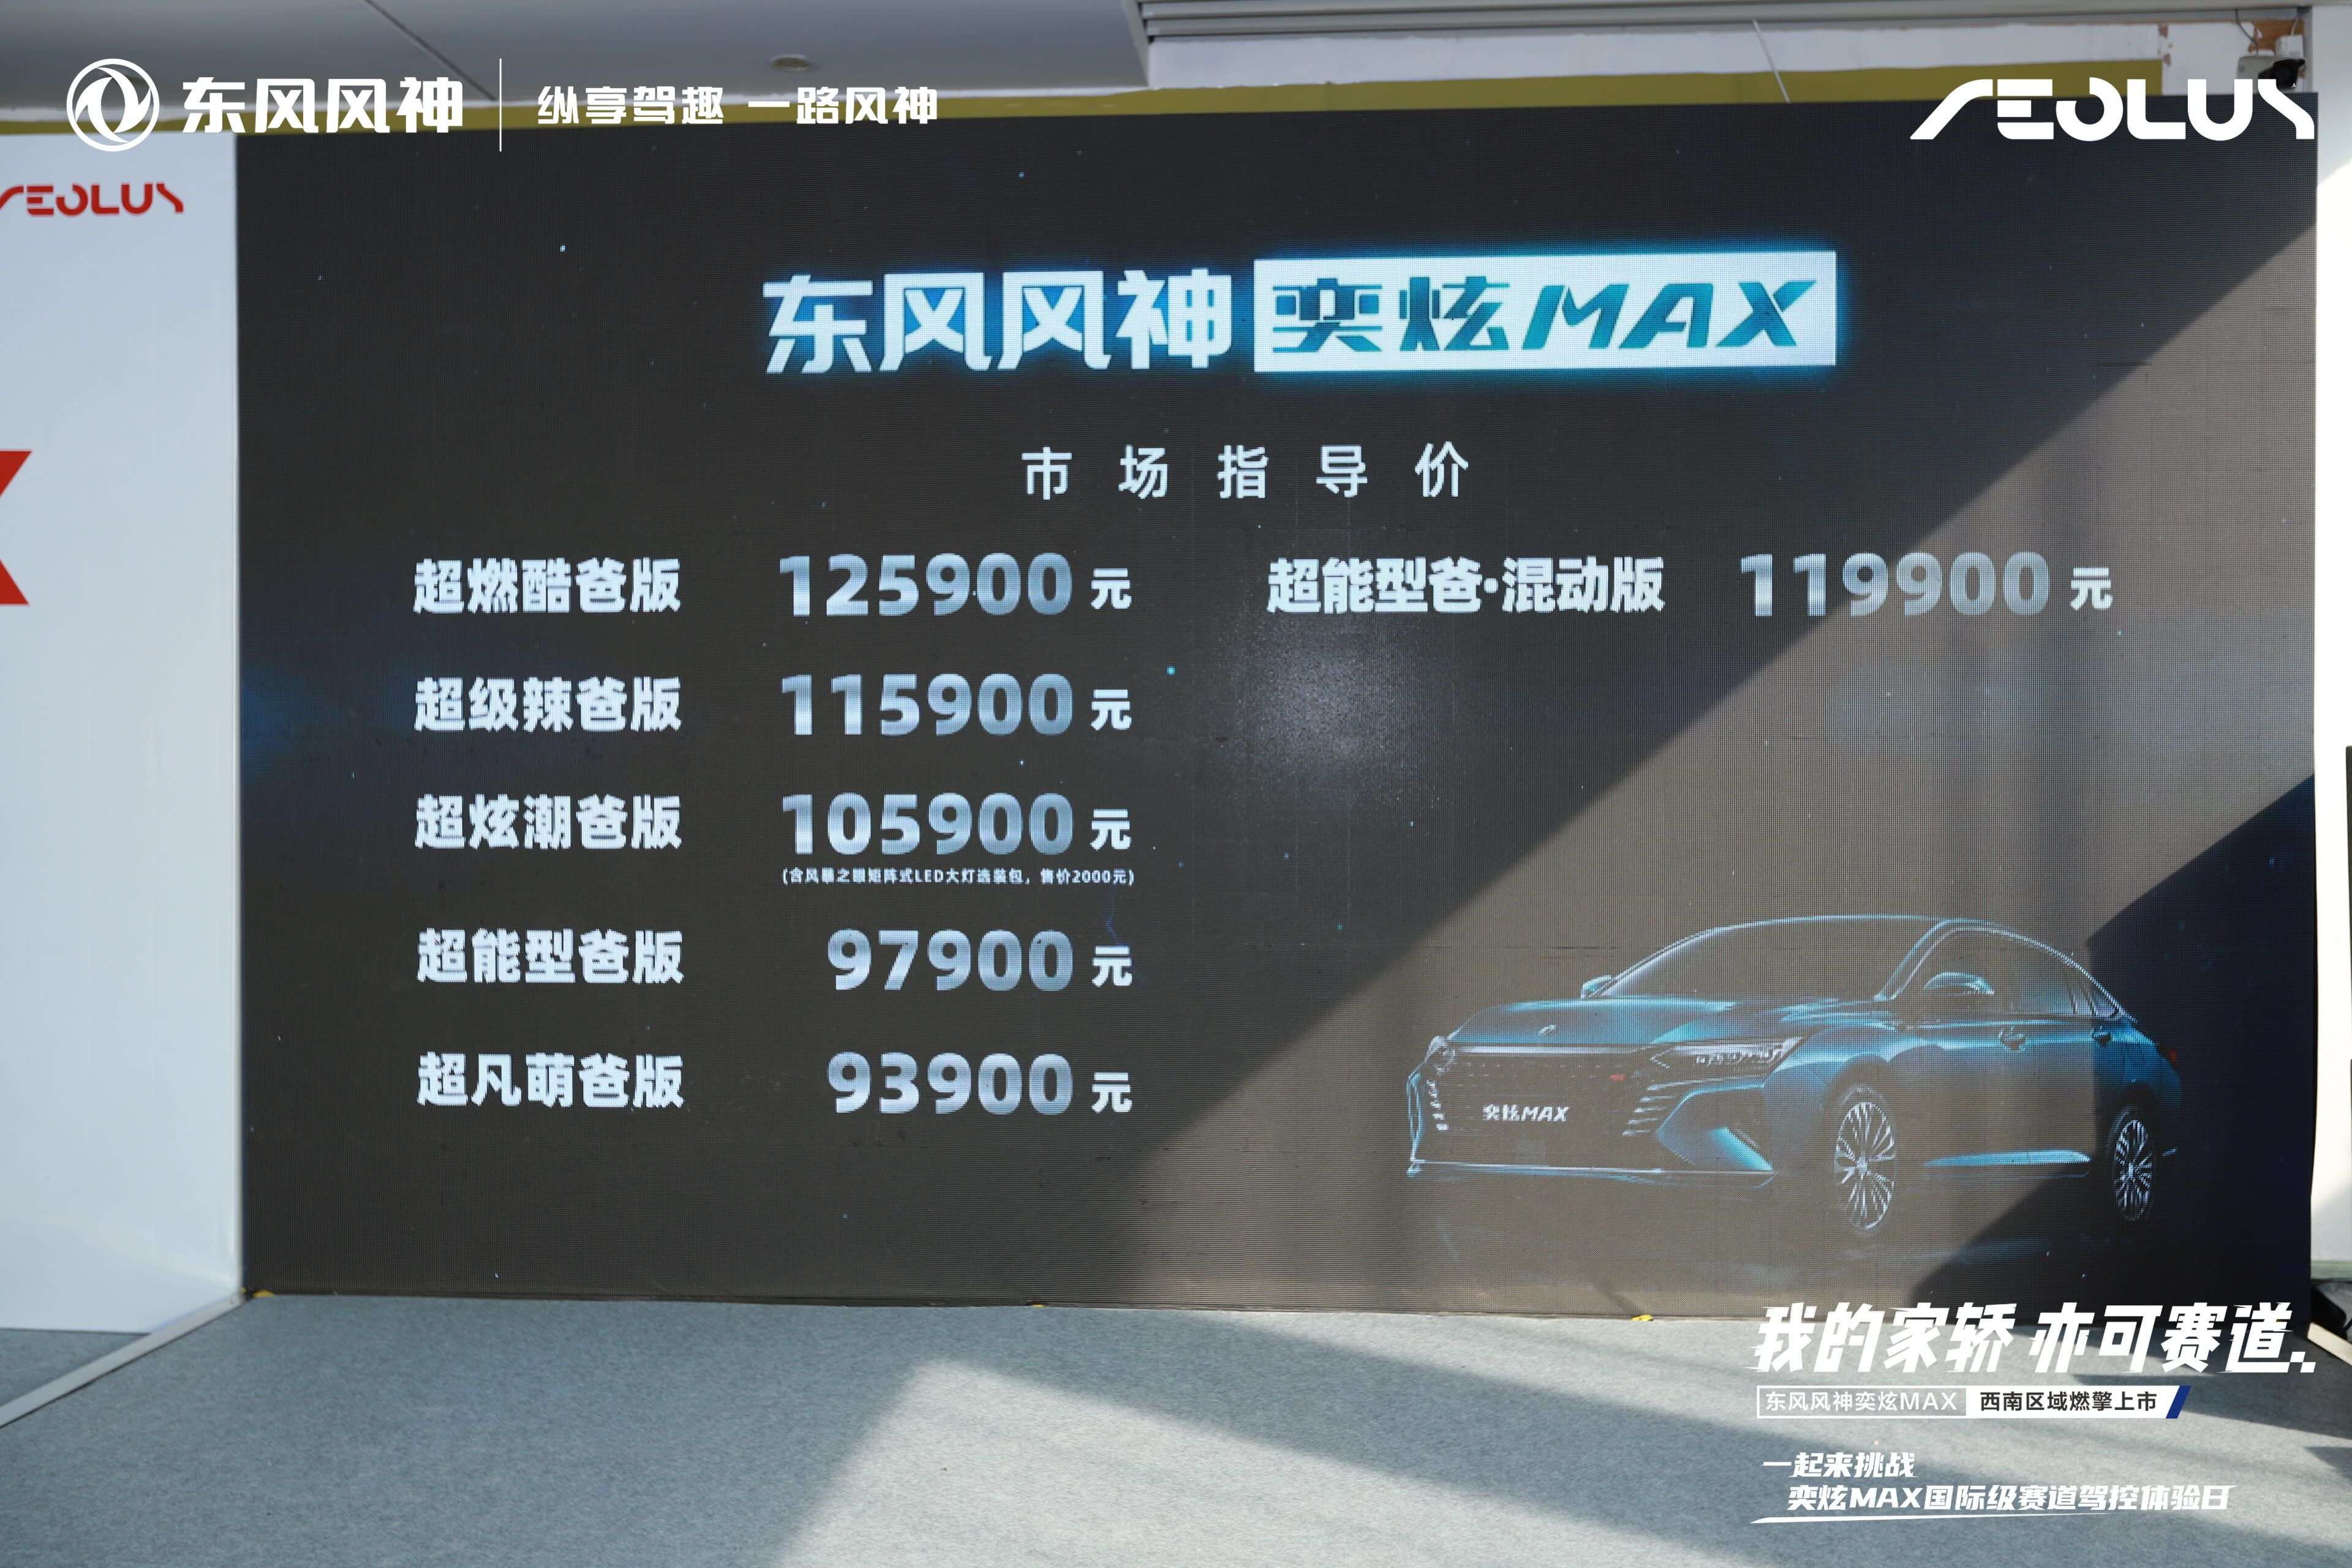 我的家轿 亦可赛道 奕炫MAX西南区域燃擎上市 售9.39-12.59万